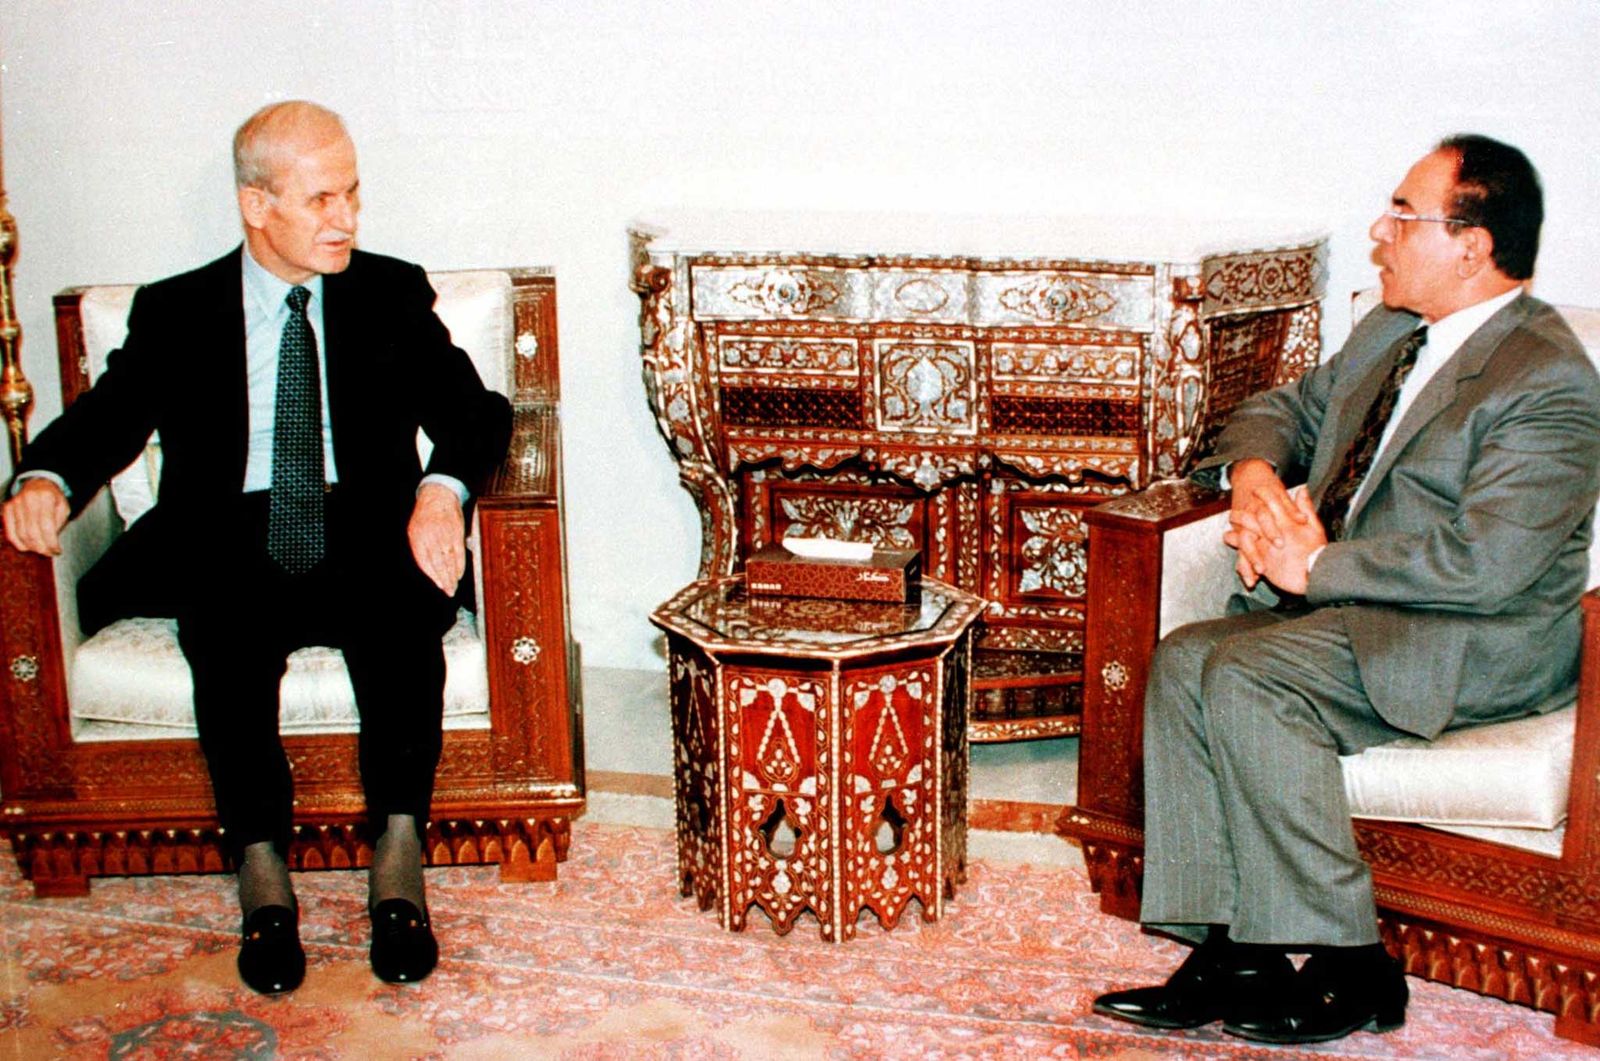 الرئيس السوري السابق حافظ الأسد (إلى اليسار) يتحدث في دمشق مع وزير الخارجية العراقي السابق محمد سعيد الصحاف الذي ينقل رسالة إلى الأسد من الرئيس العراقي صدام حسين، 10 فبراير 1998 - X00561